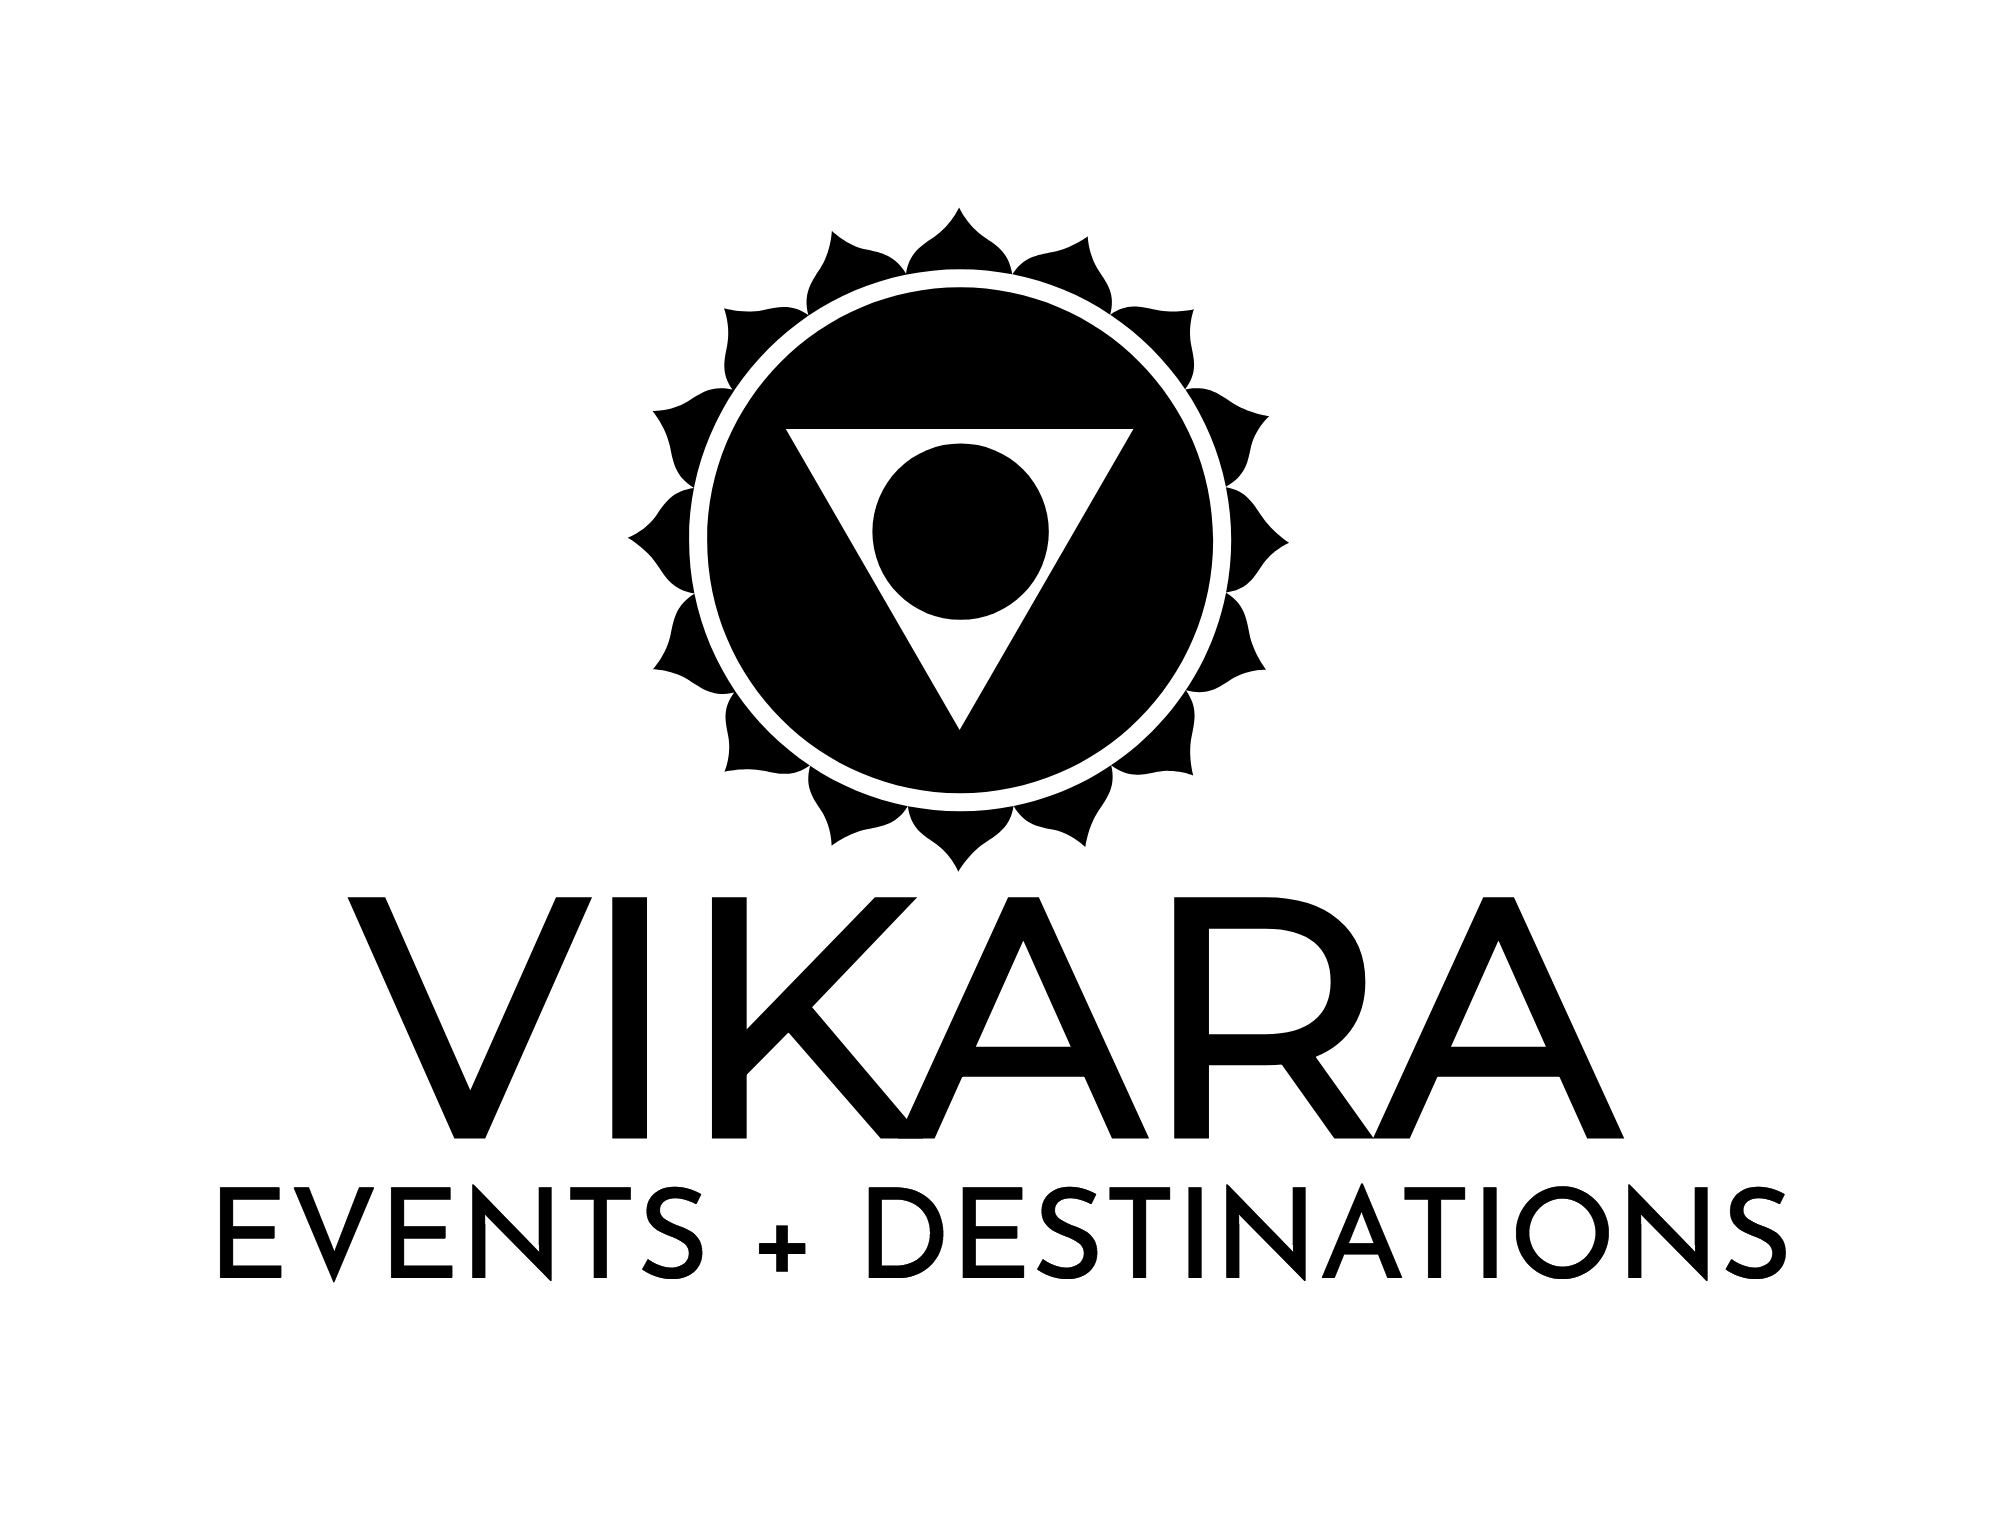 VIKARA_-logo-black.png